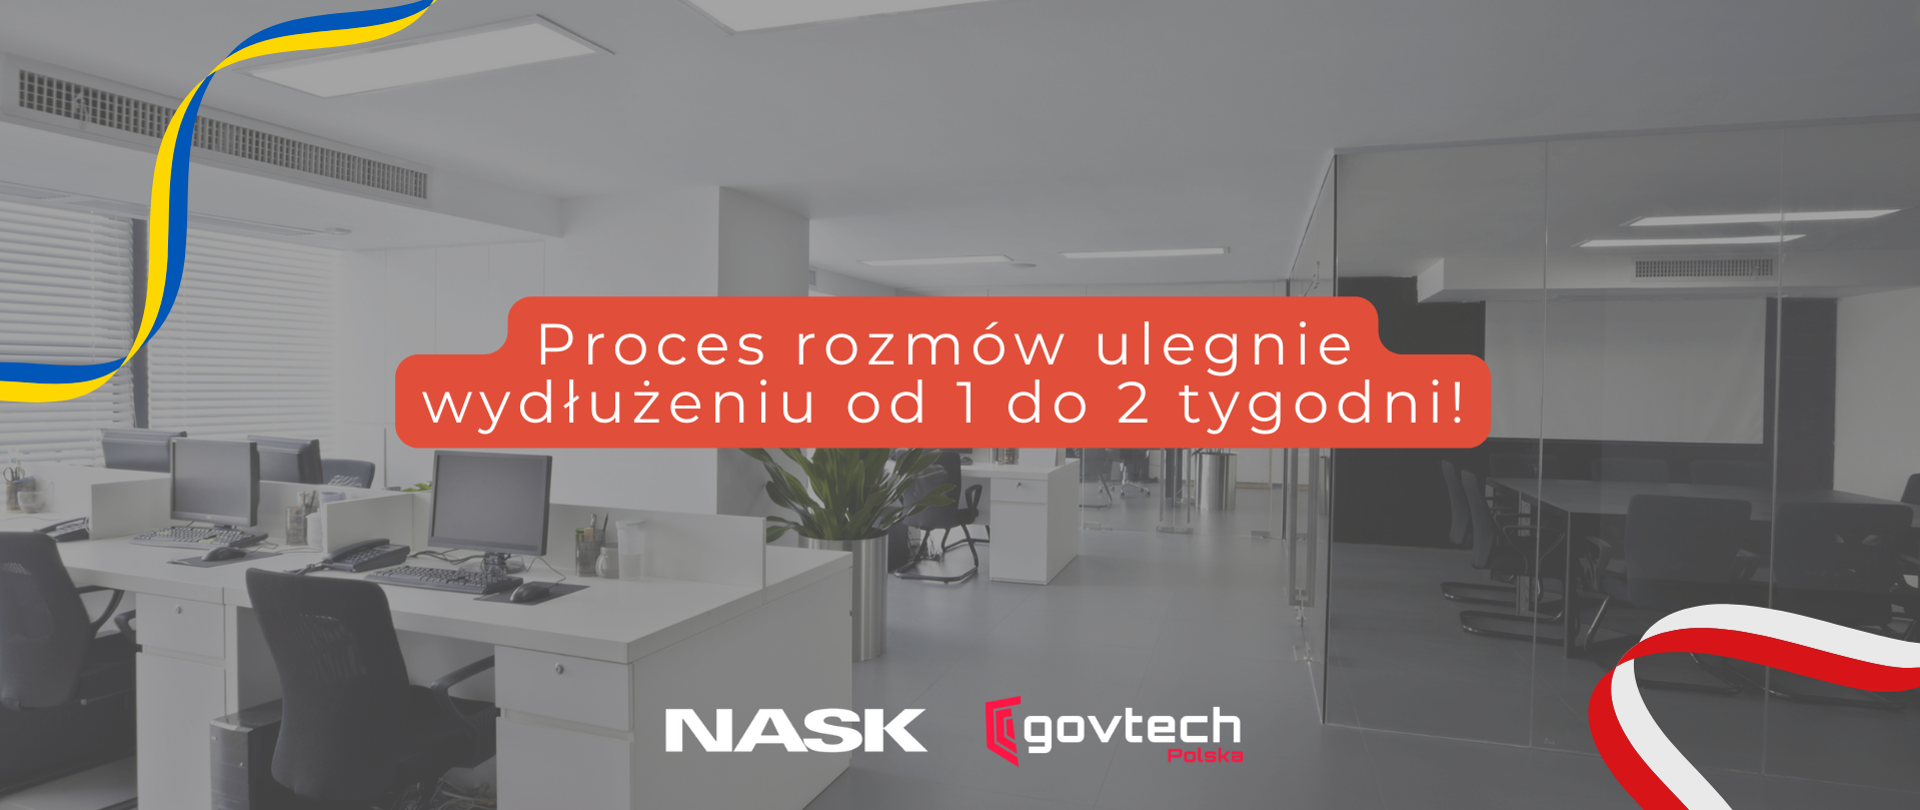 Proces rozmów ulegnie wydłużeniu od 1 do 2 tygodni! Logotyp NASK i GovTech. Flaga Polski i Ukrainy. 